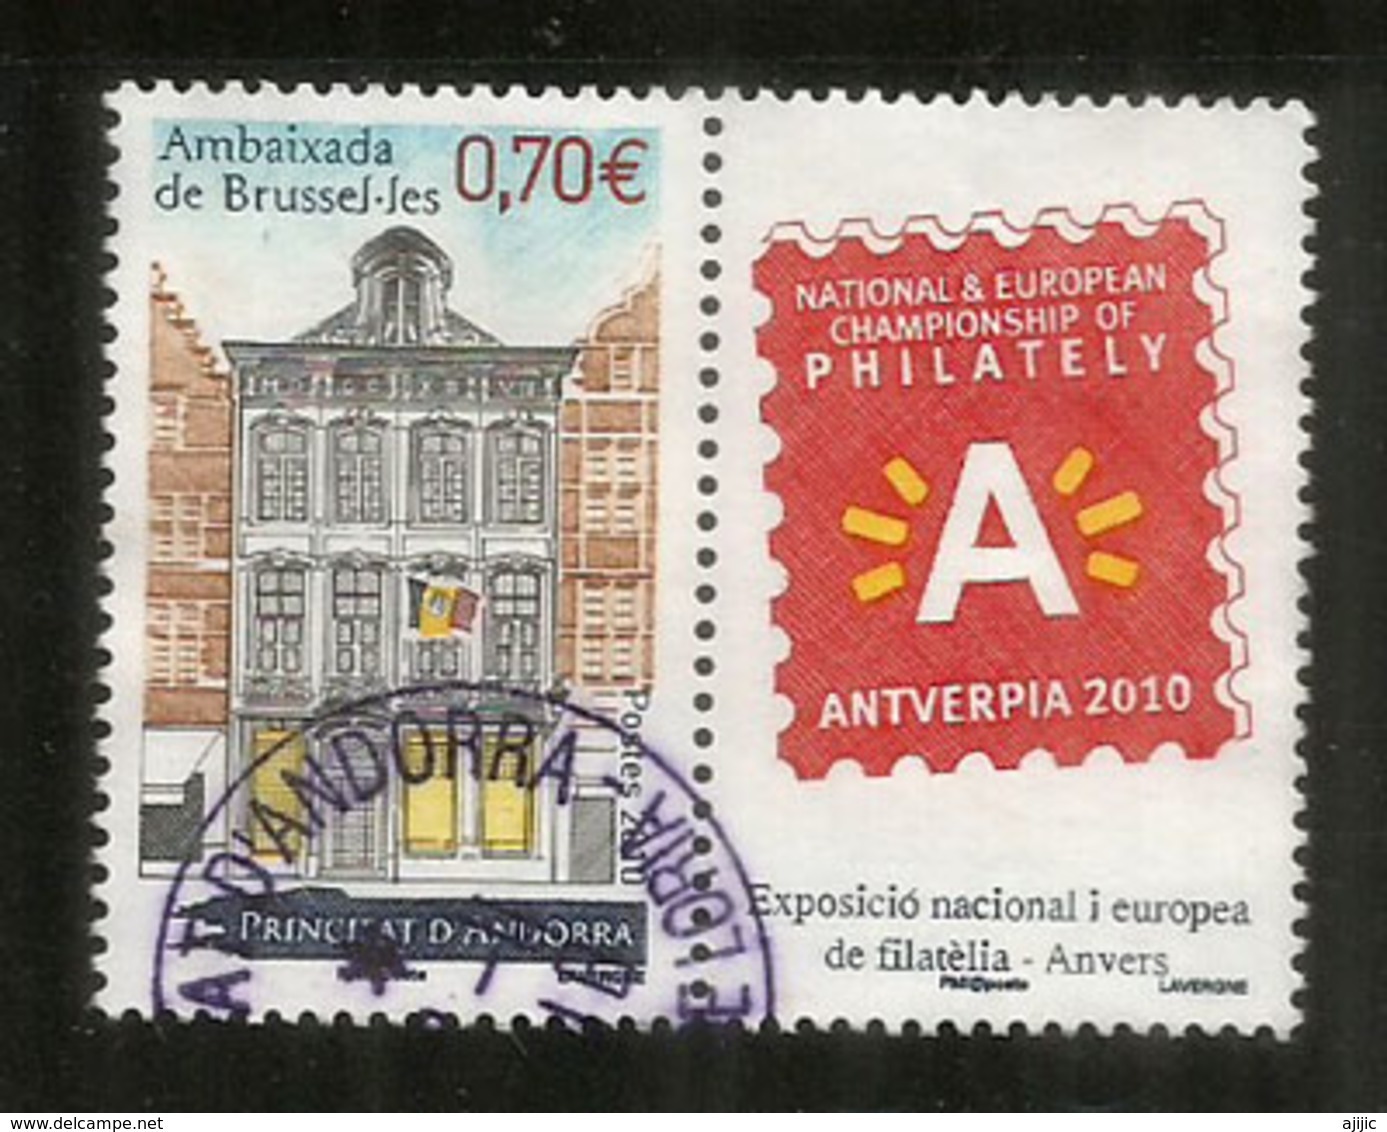 Ambassade D'Andorre à Bruxelles, Un Timbre Oblitéré Avec Vignette Antverpia 2010, 1 ère Qualité - Oblitérés